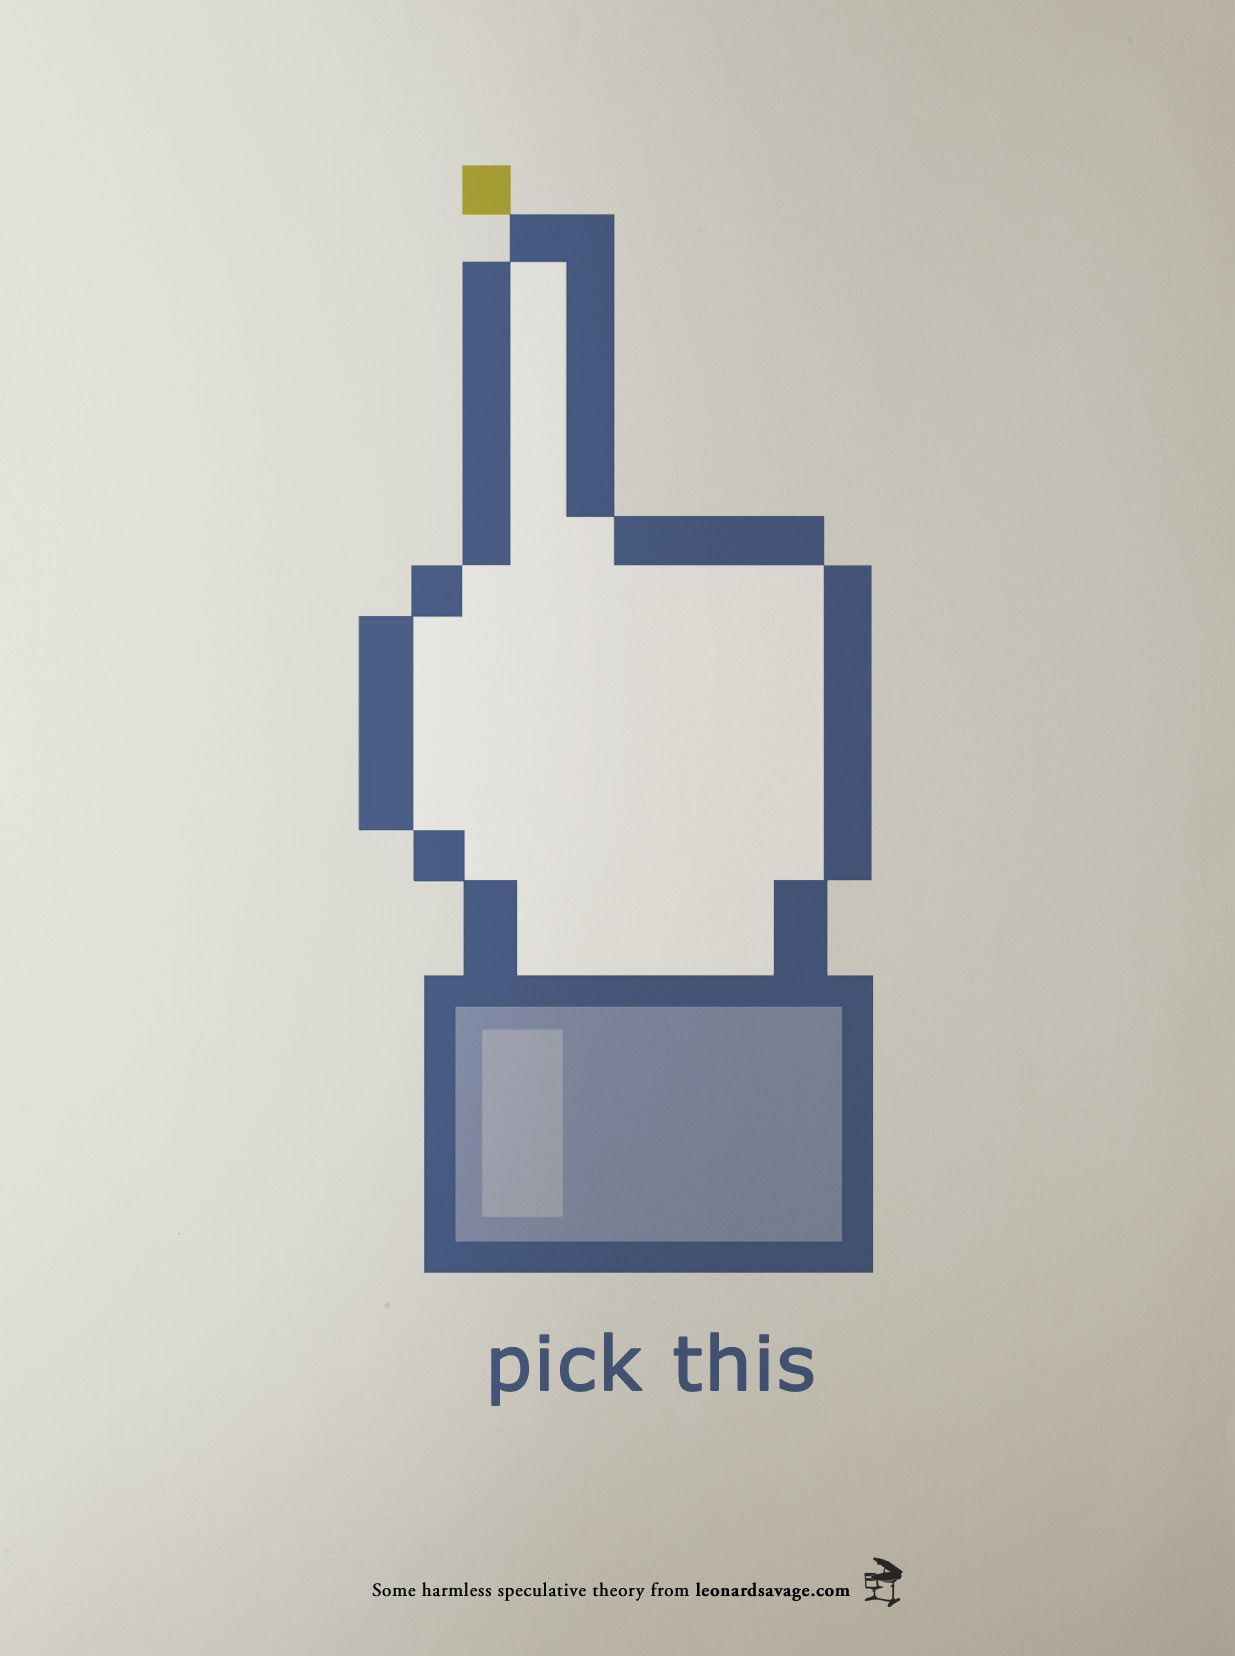 9 nouveaux boutons Facebook pour succéder au bouton ˝J'aime˝ #6